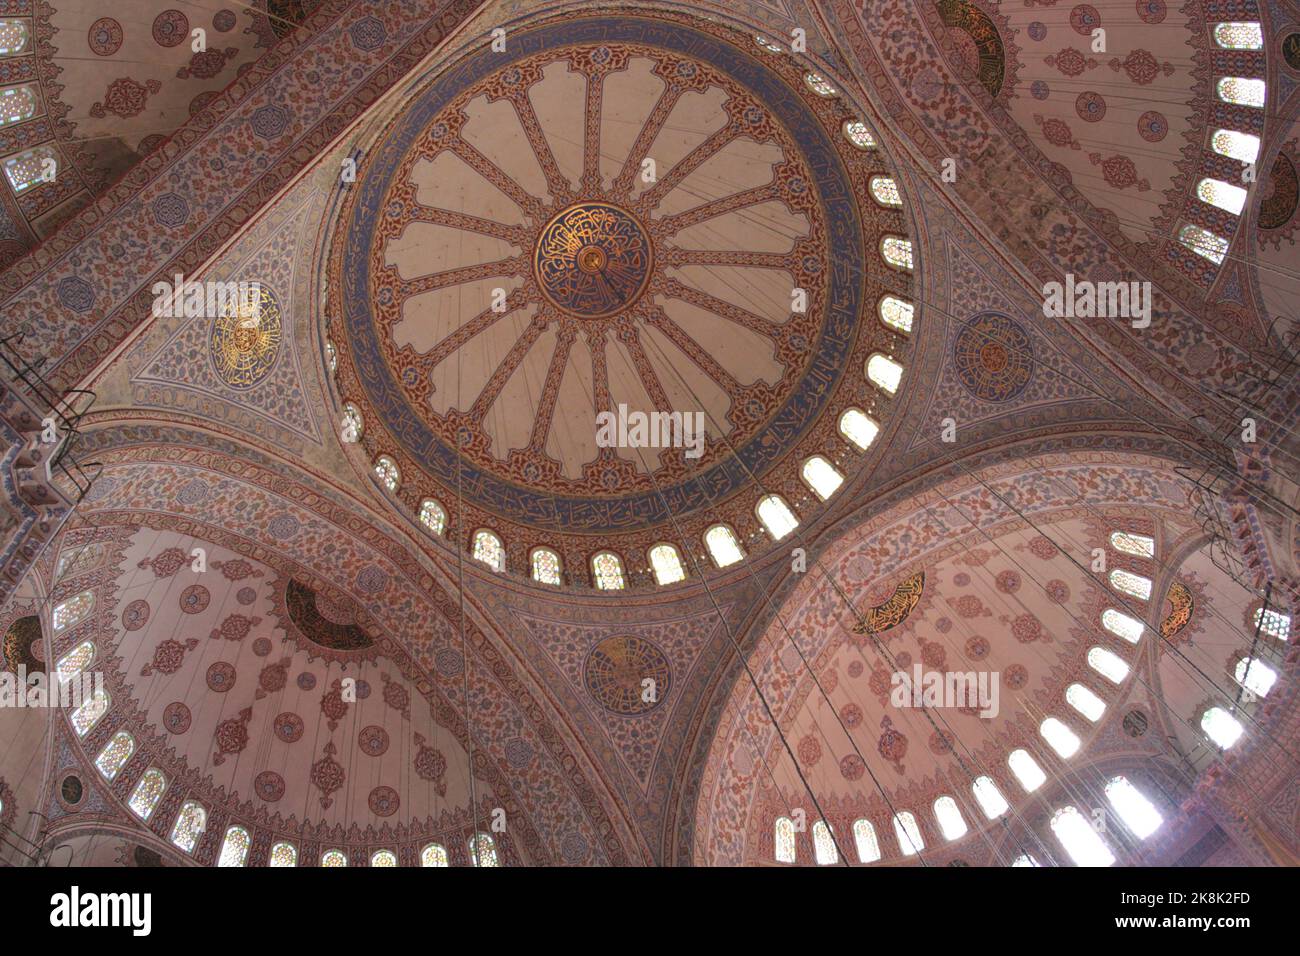 Plafond de la Mosquée bleue de l'époque ottomane, mosquée du Sultan Ahmed, Sultan Ahmed Camii, Istanbul, Turquie Banque D'Images